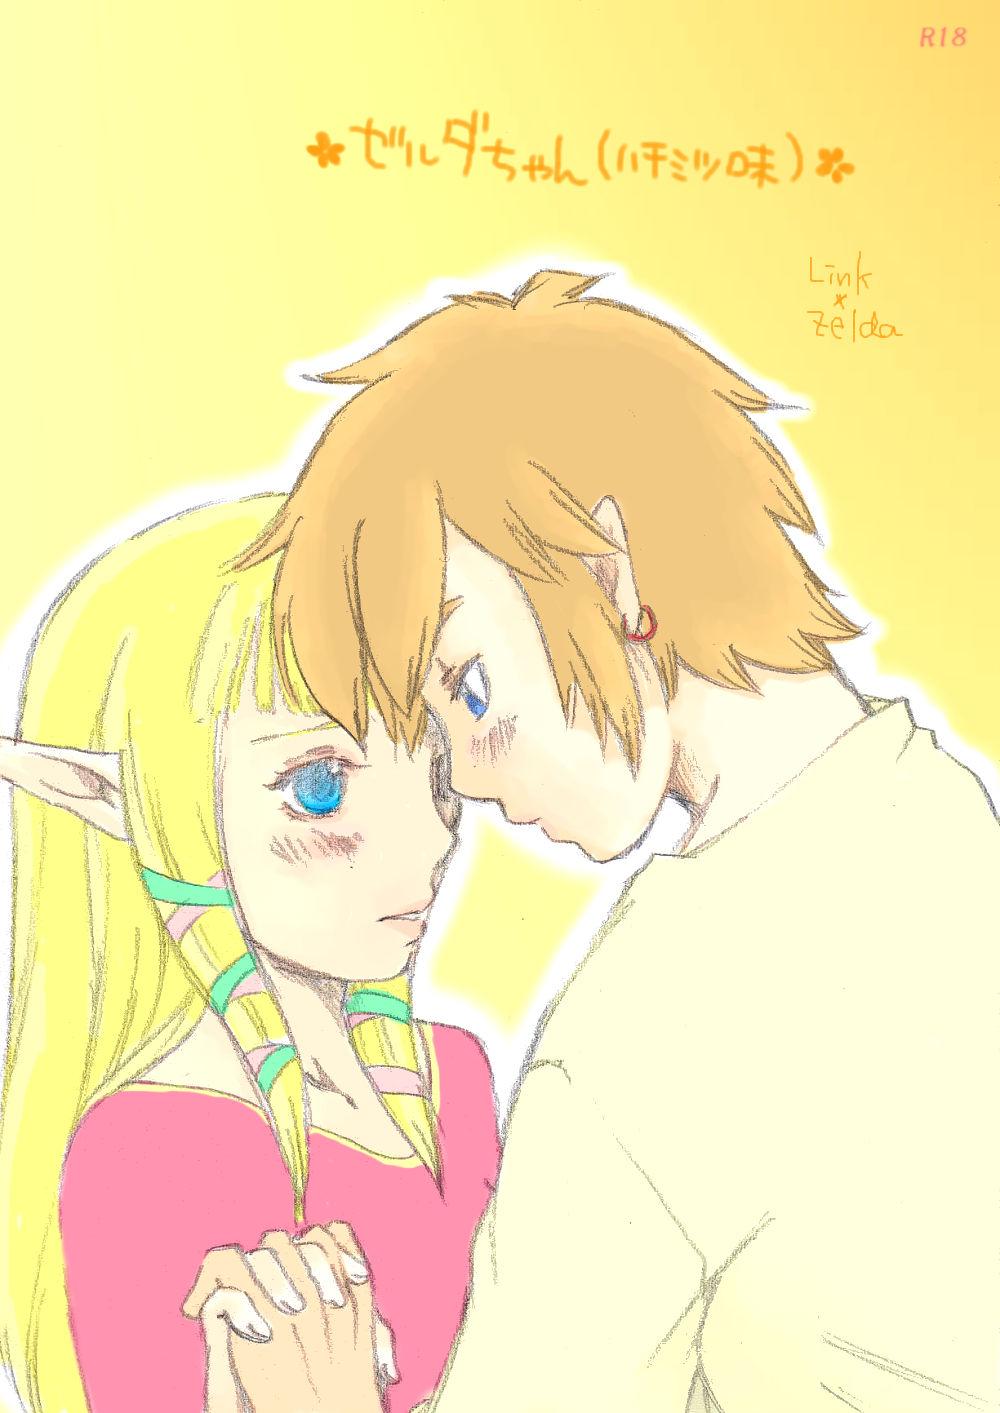 [Buthi] ✿ Zelda-chan (Honey flavored) ✿ (The Legend of Zelda: Skyward Sword) [English] 0